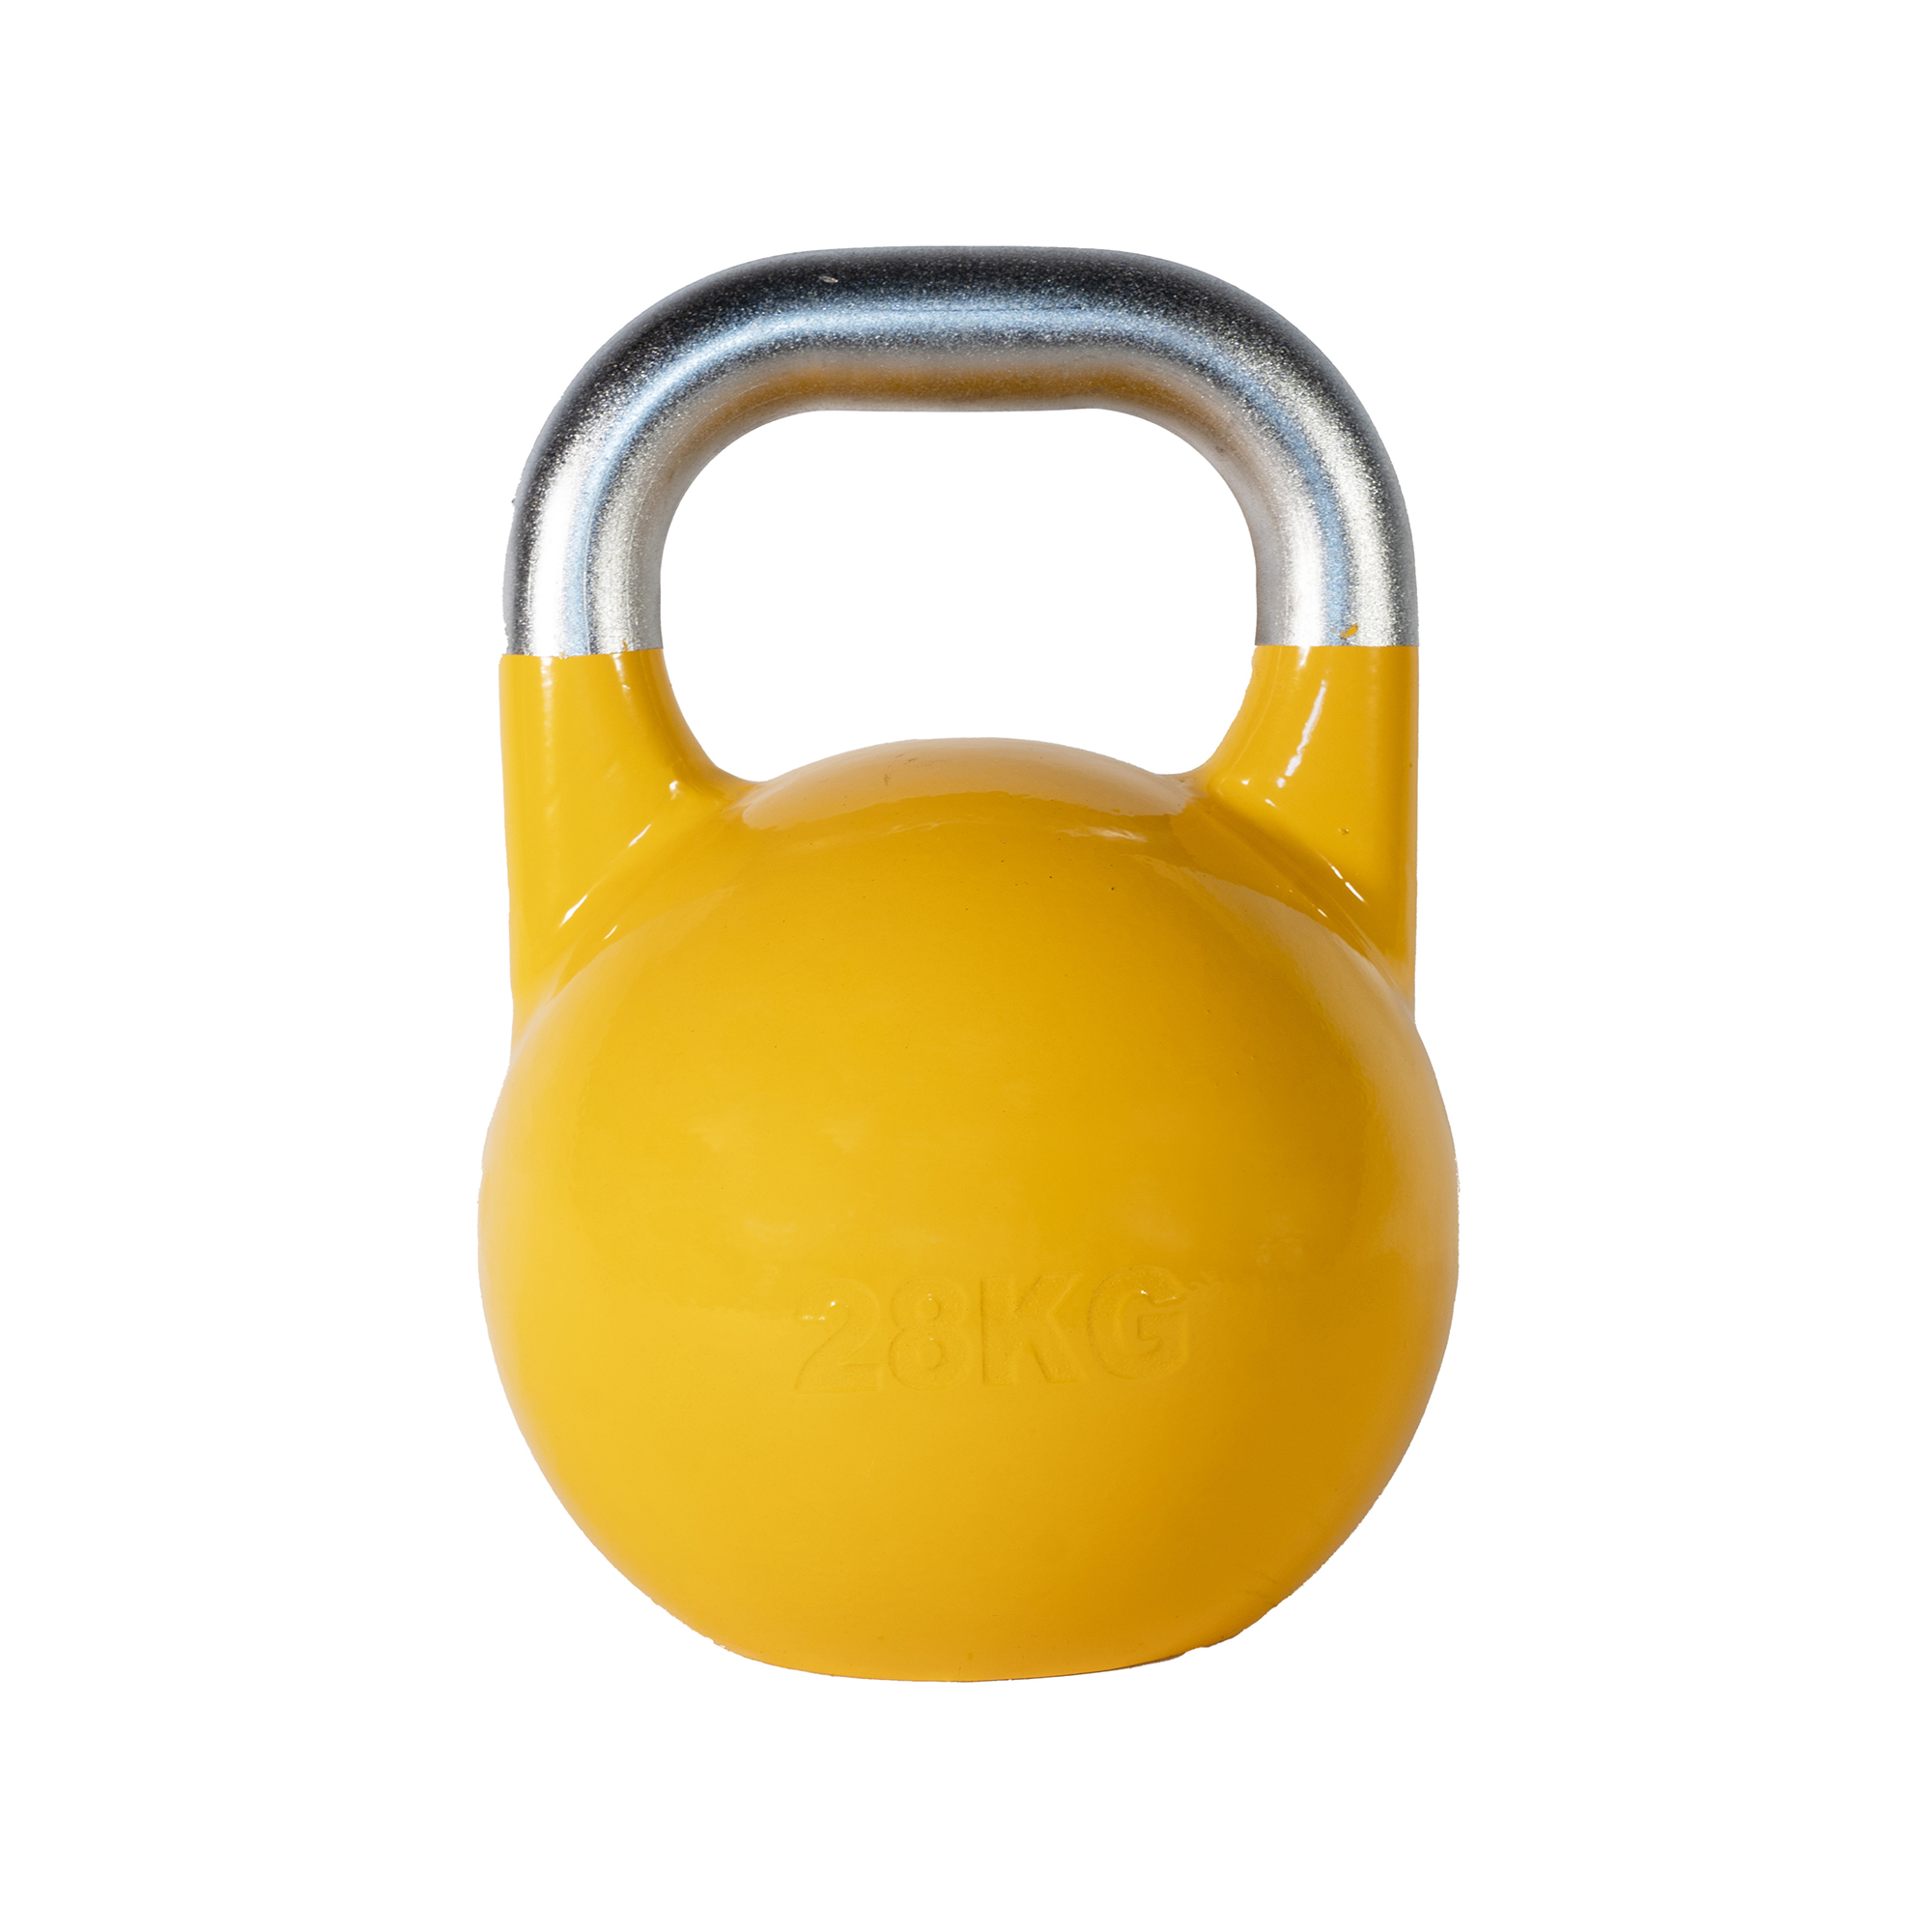 SQ&SN Competition Kettlebell (28 kg) i støbejern. Udstyr til crossfit træning, styrketræning og funktionel træning thumbnail